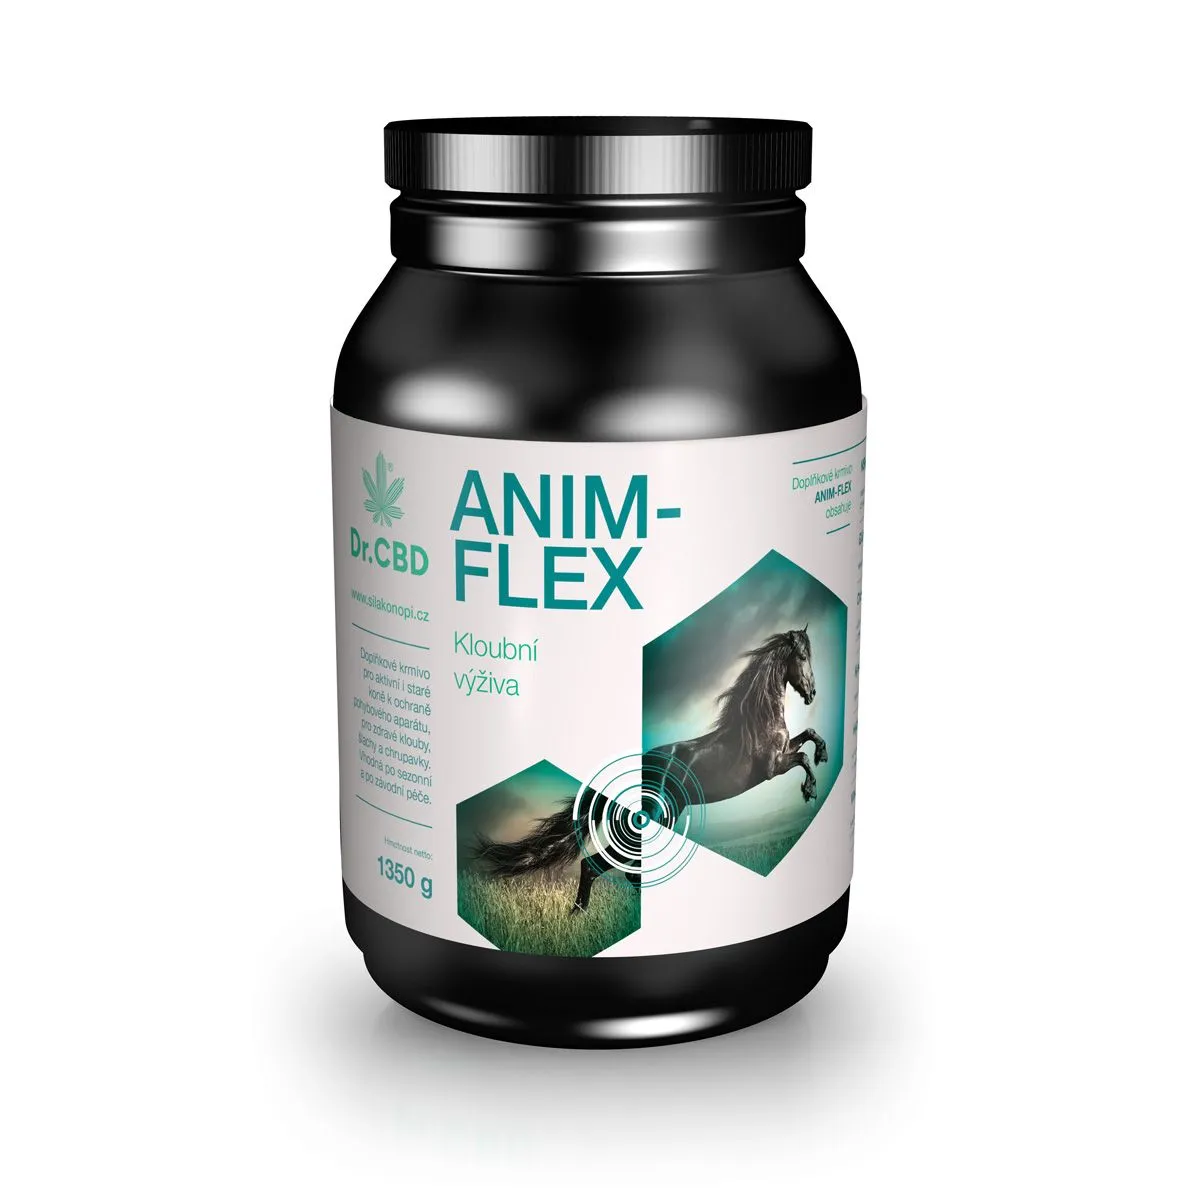 Dr.CBD Anim-flex kloubní výživa